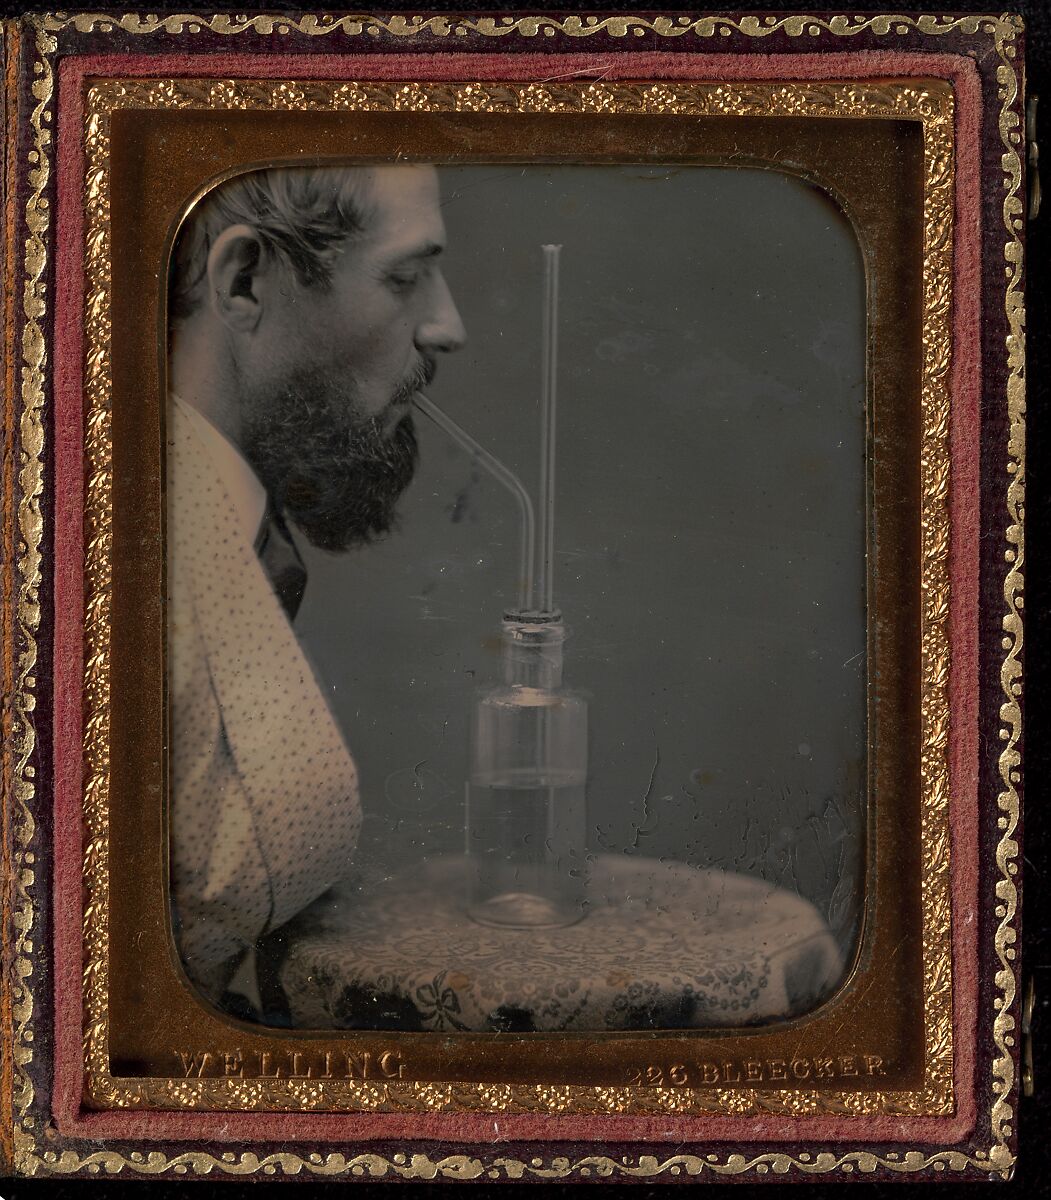 James Hyatt Inhaling Chlorine Gas, Peter Welling (American, active c. 1850s), Daguerreotype 